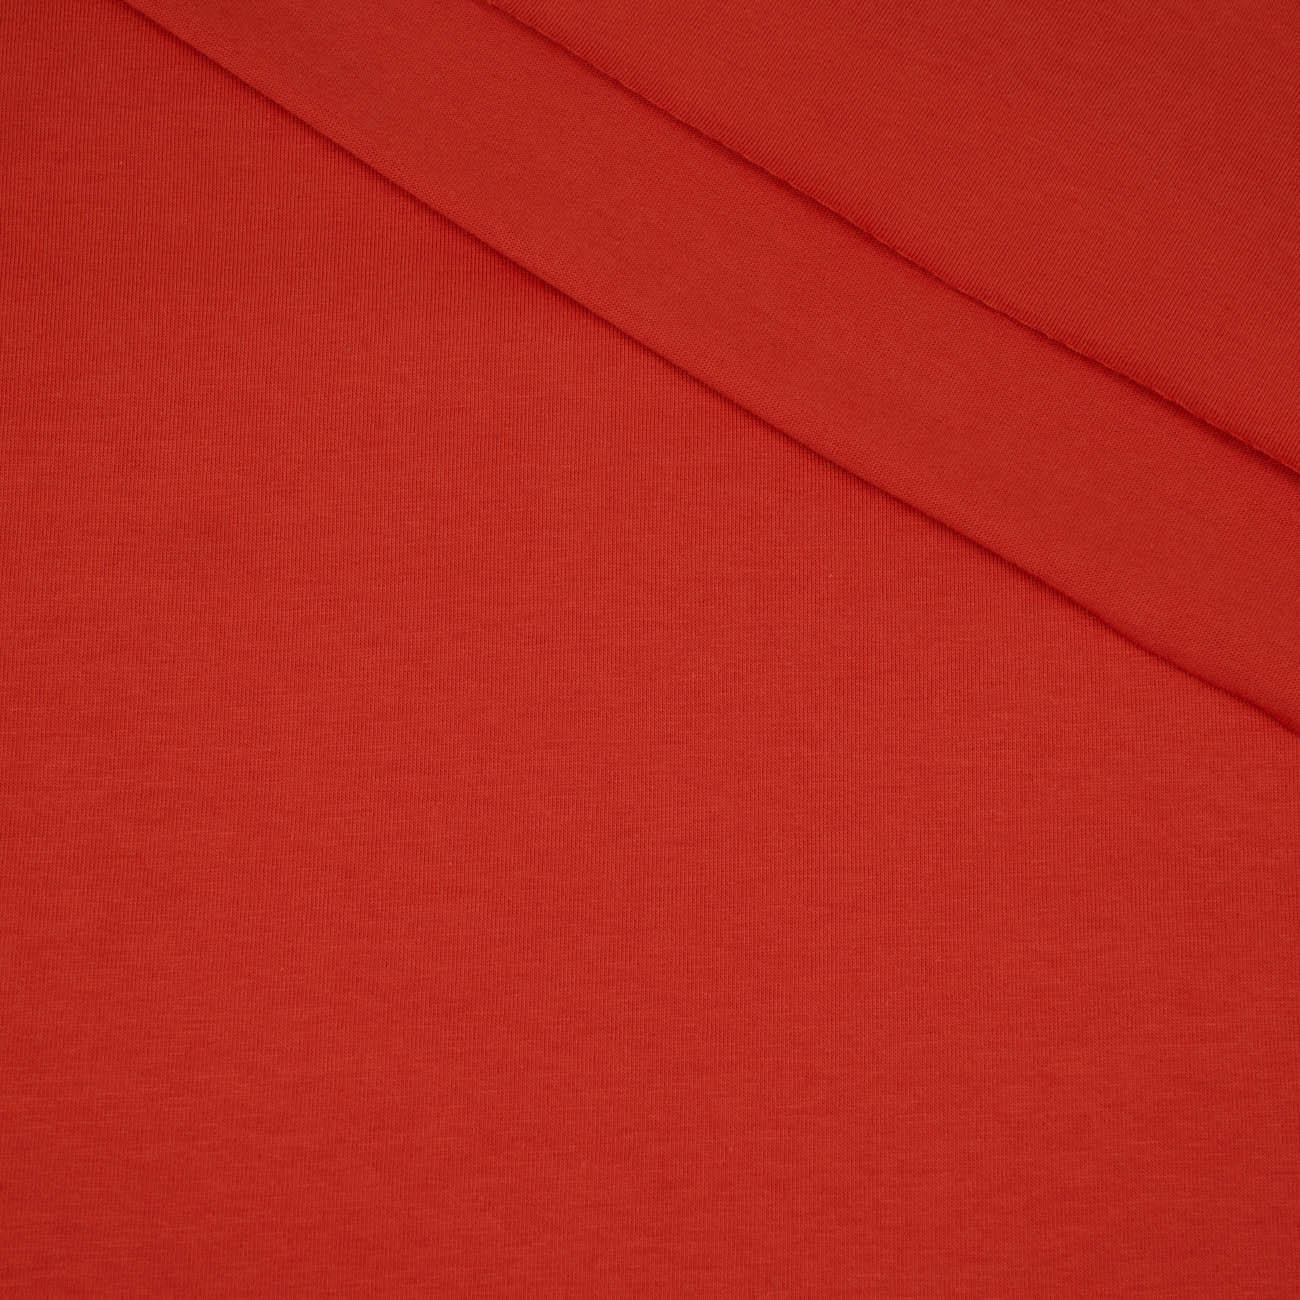 B-24 FIESTA / jasna czerwona - dzianina t-shirt 100% bawełna T180